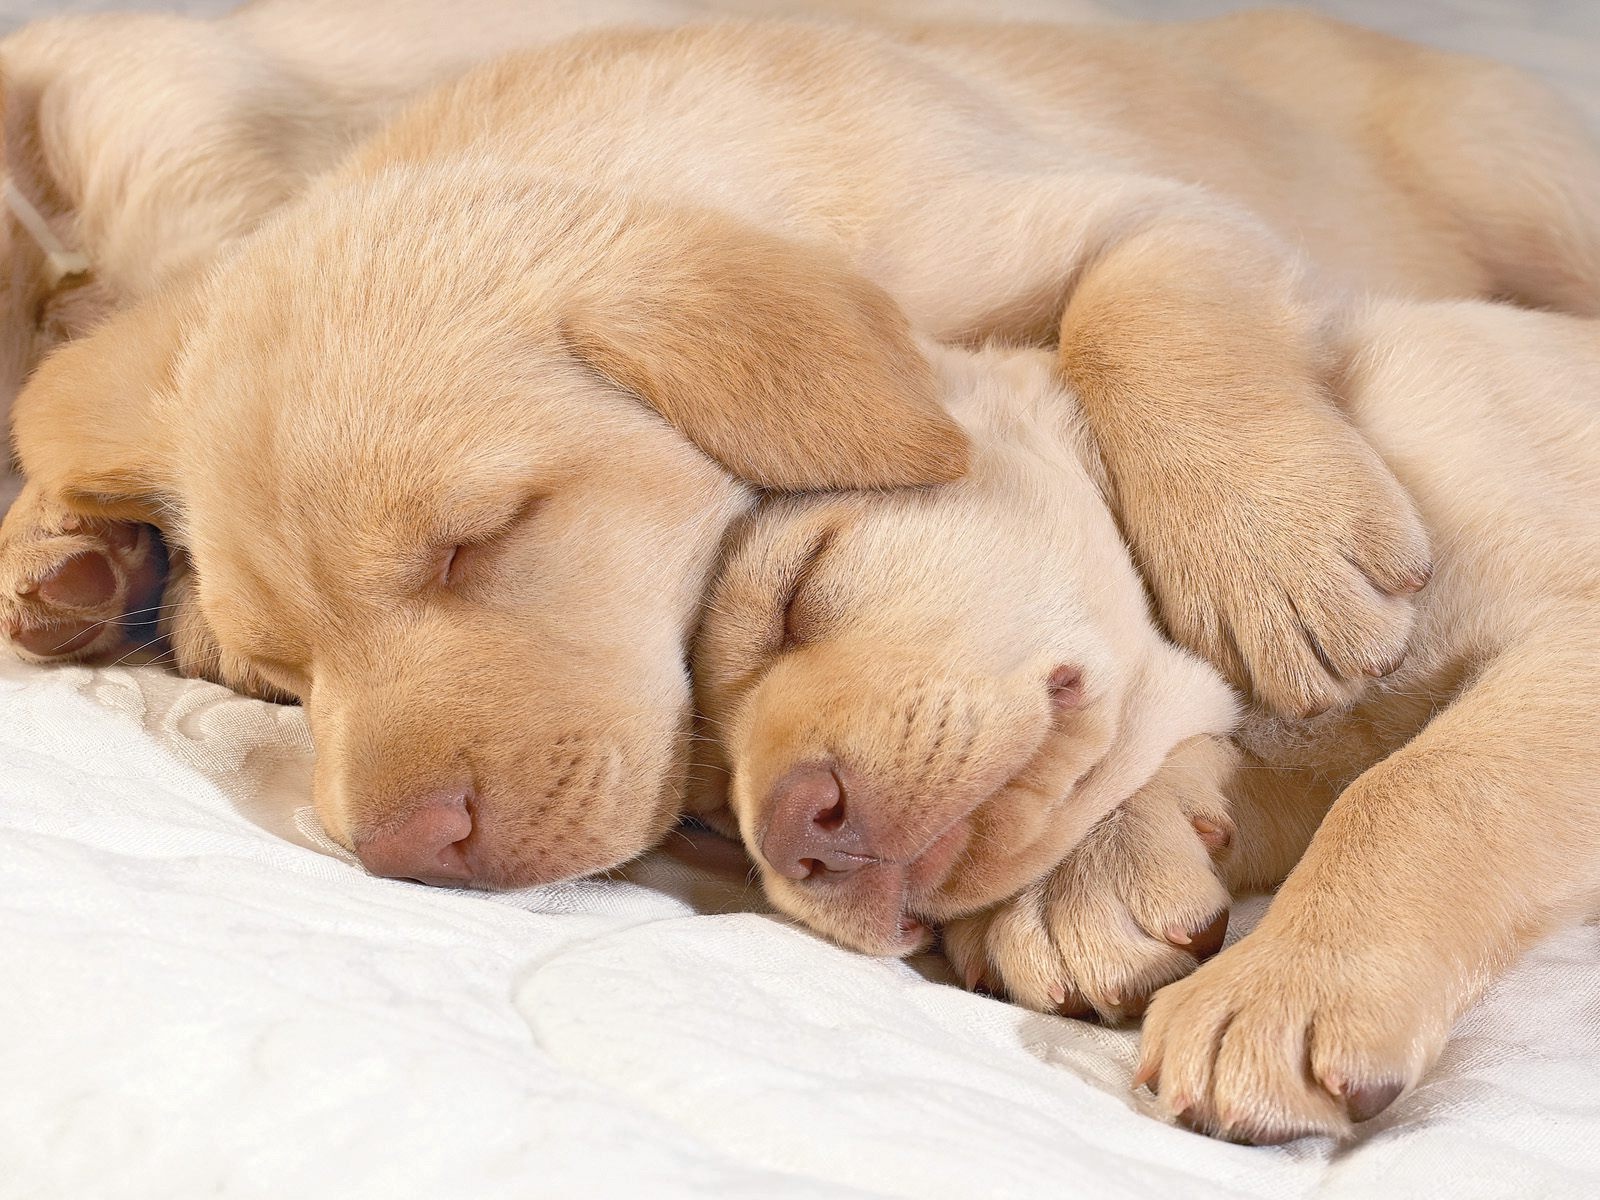 Schweizer Laufhund Puppies: Schweizer Sleeping Golden Retriever Puppies Breed